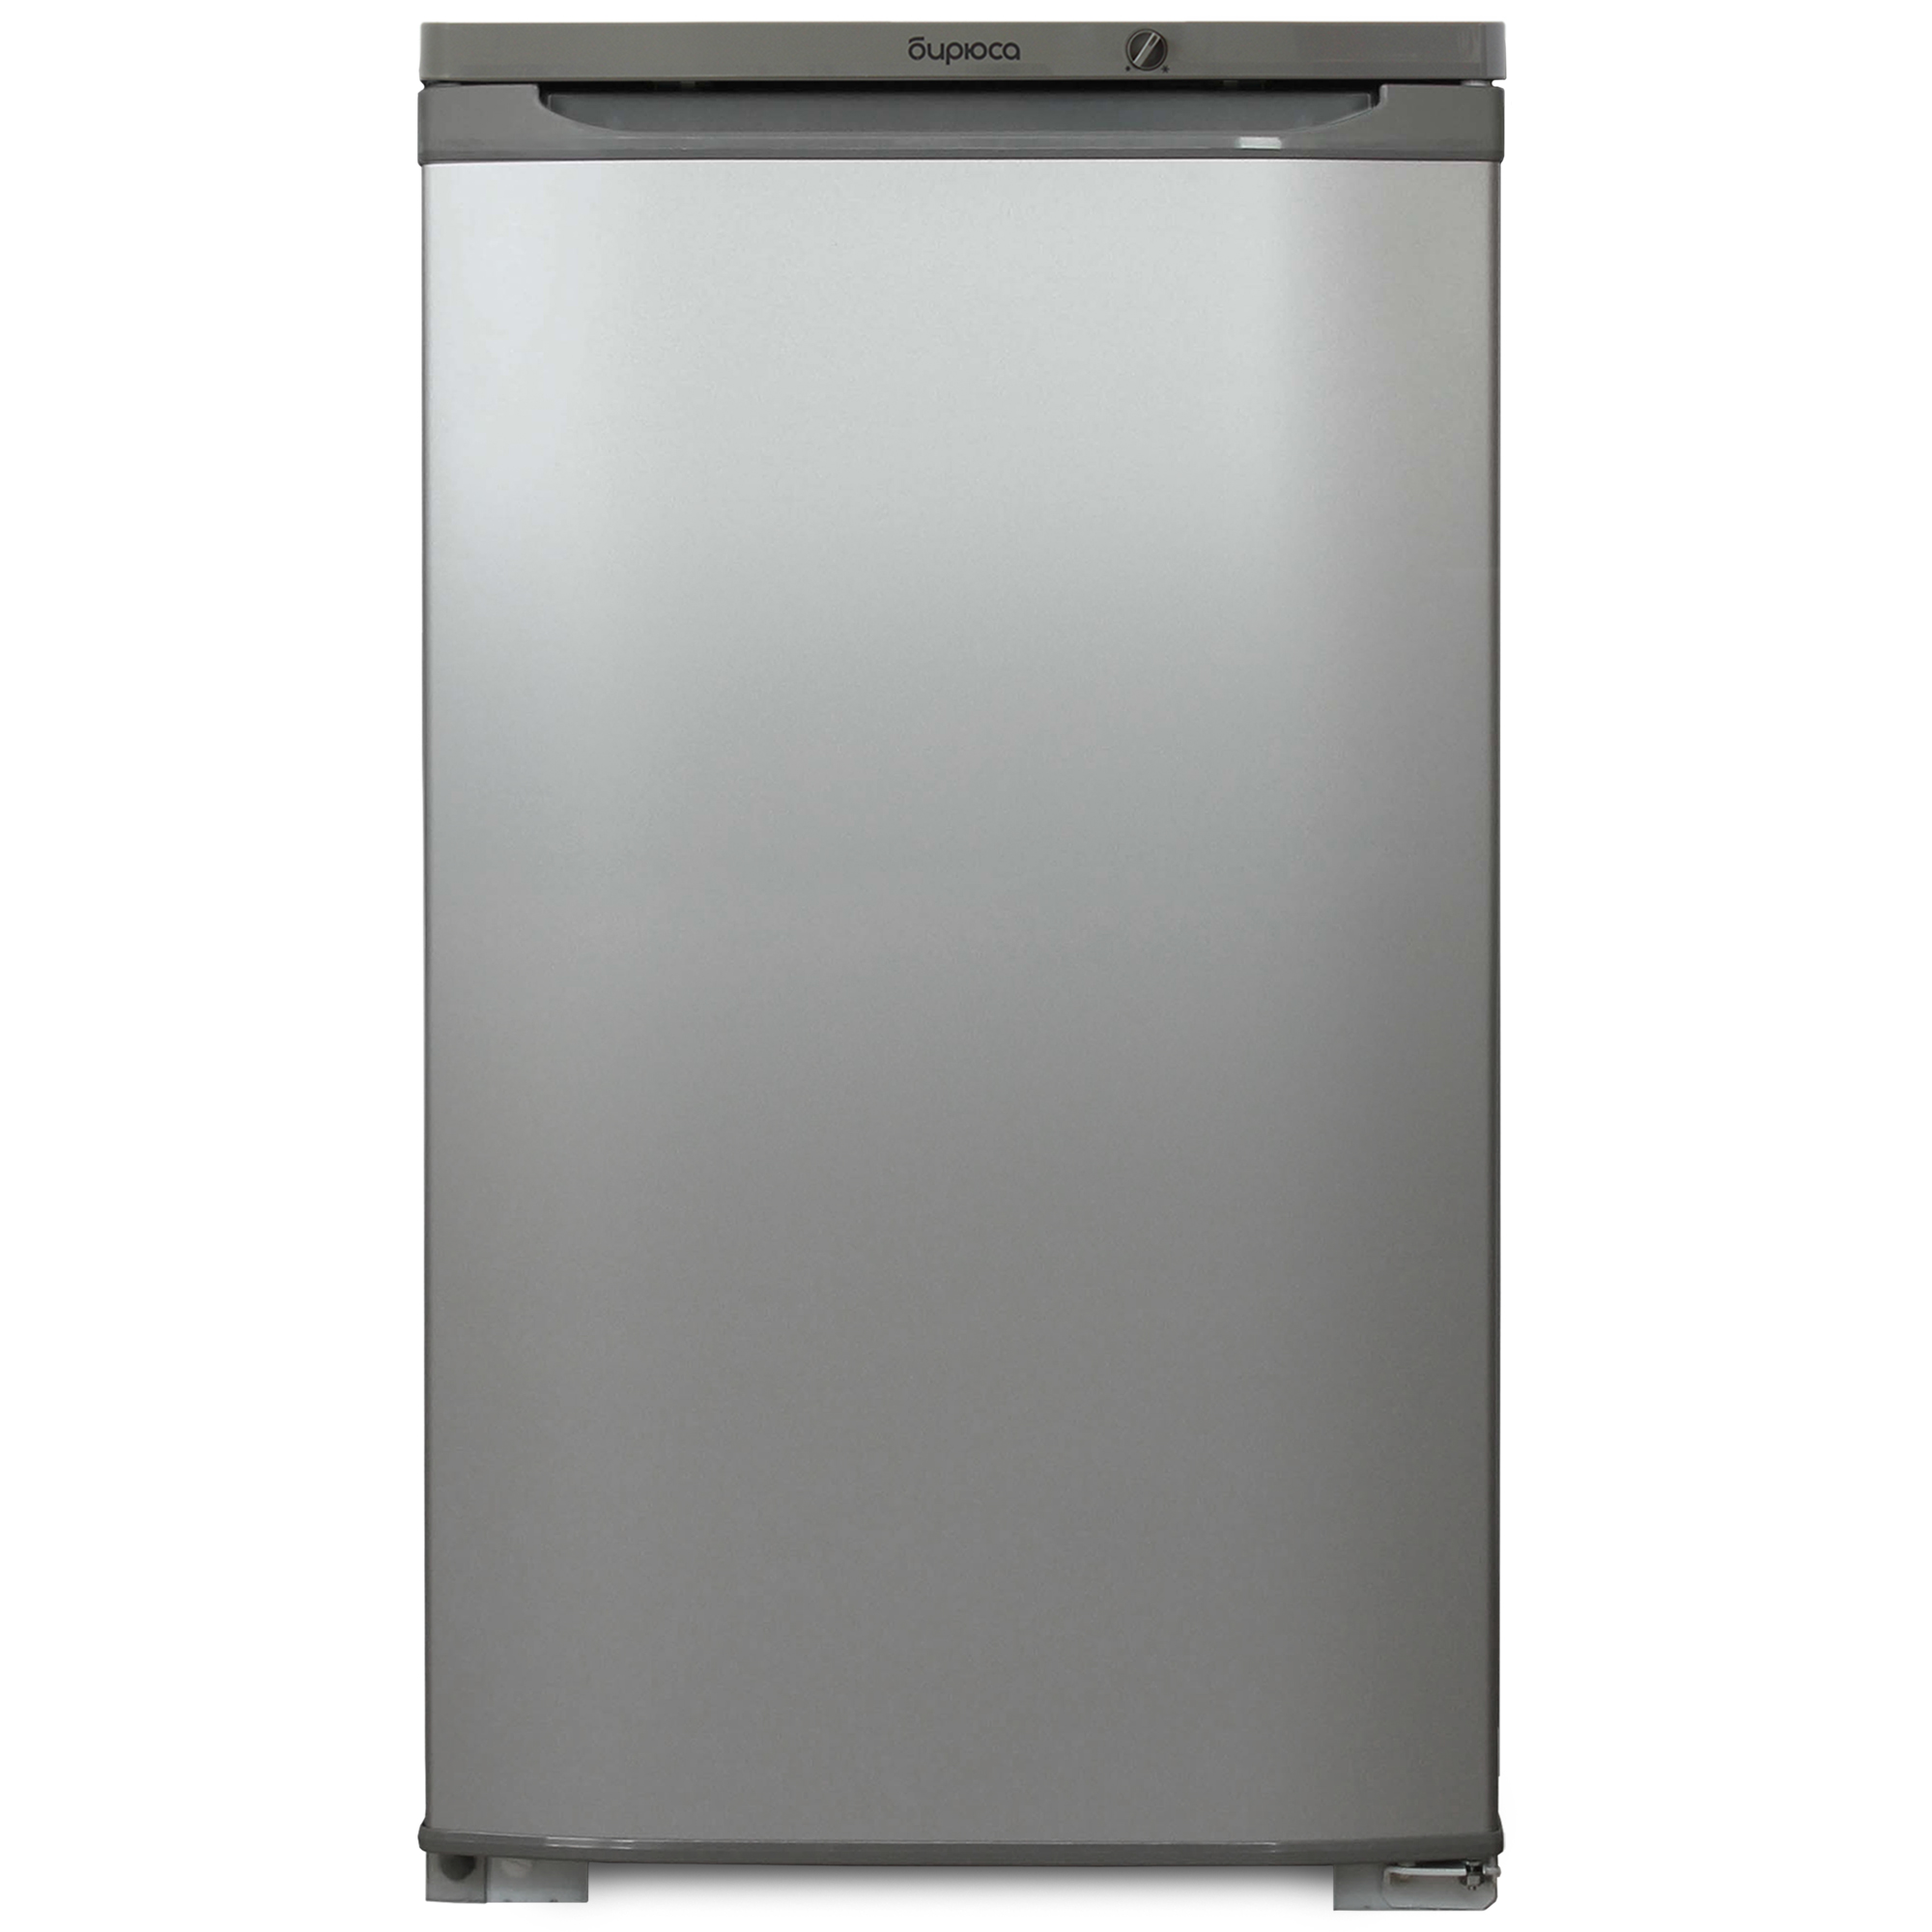 Холодильник Бирюса M108 серебристый однокамерный холодильник бирюса б m108 металлик